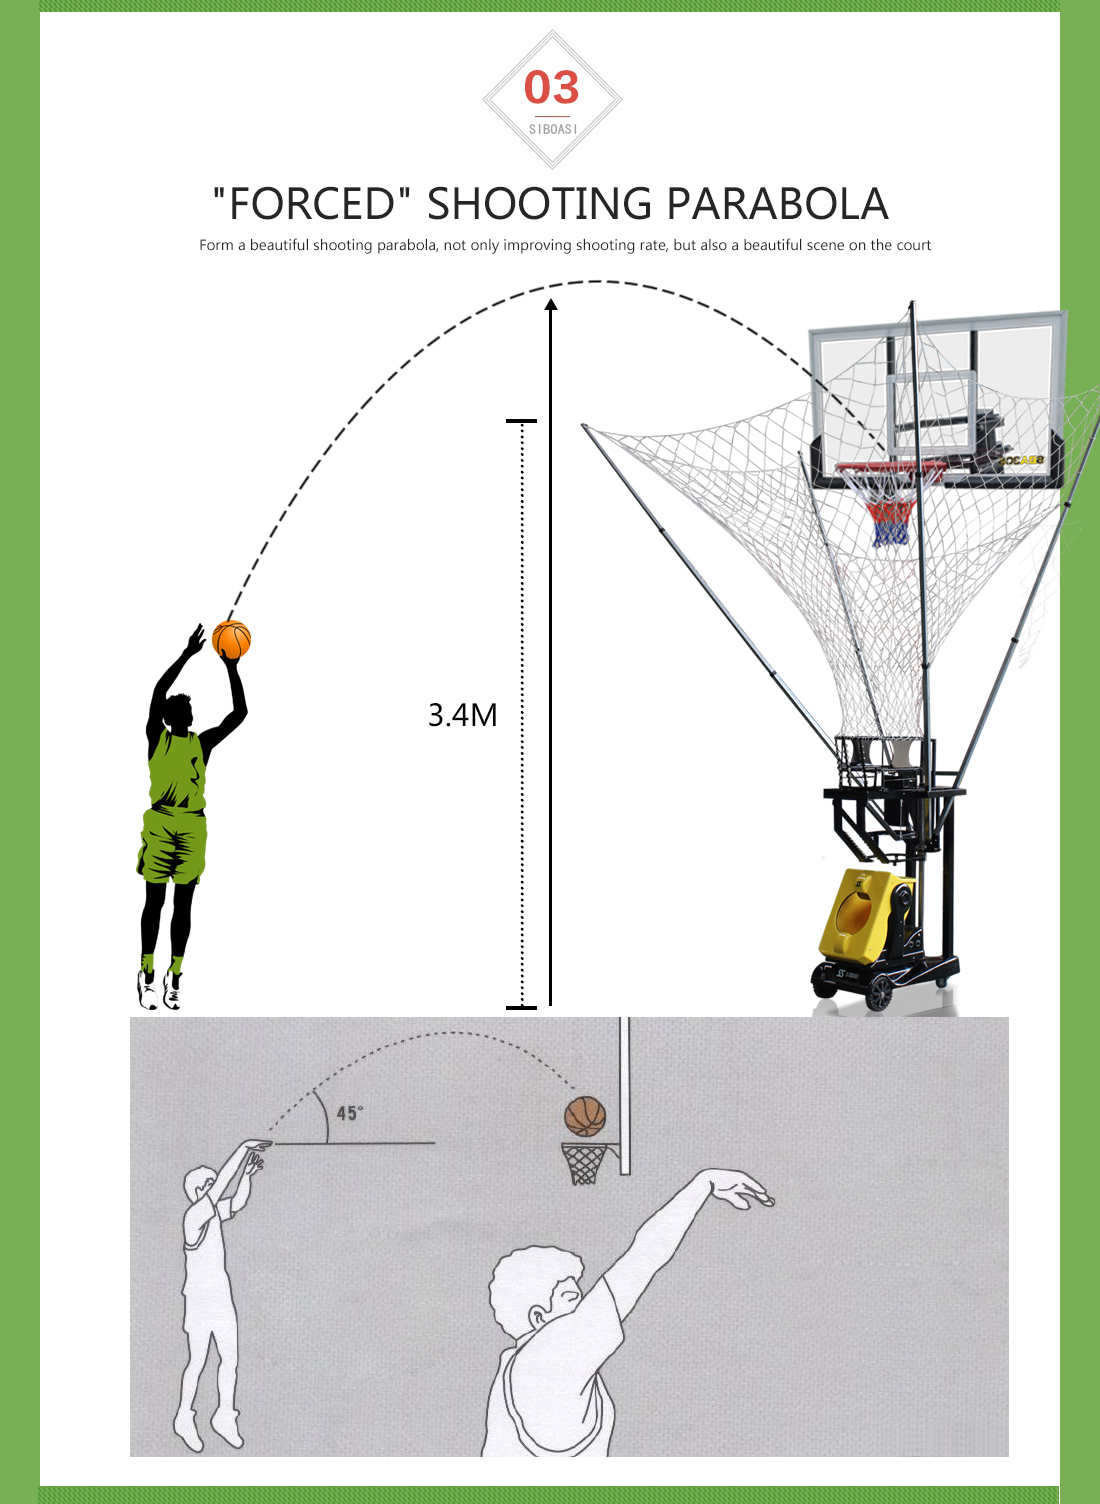 basketball shooting machine